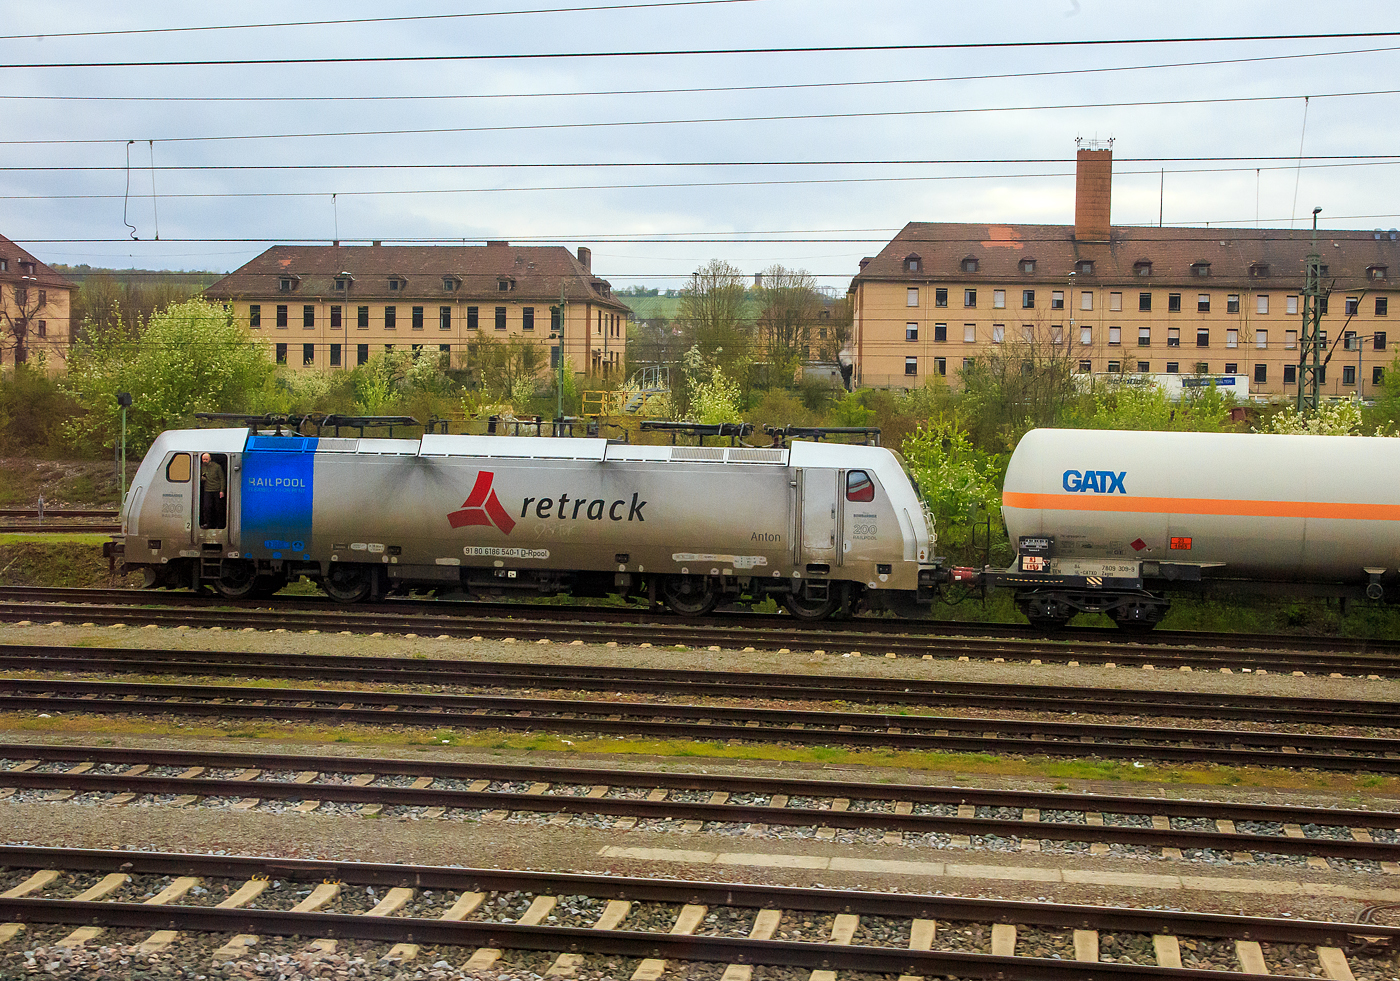 Die an die Retrack Germany GmbH (Hamburg) vermietete Railpool 186 540-1  Anton  (91 80 6186 540-1 D-Rpool) steht am 17.04.2023 mit einem Kesselwagenzug bei Würzburg. Sie trägt Aufkleber „Bombardier TRAXX Nr. 200 für Railpool“. 

Die Bombardier TRAXX F140 MS(2E) wurde 2020 von Bombardier in Kassel unter der Fabriknummer 35654 gebaut und an die Railpool ausgeliefert. Sie ist damit die 200te Bombardier TRAXX-Lok für die Railpool GmbH (München). Die Multisystemlokomotive hat die Zulassungen bzw. besitzt die Länderpakete für Deutschland, Österreich, Polen, Tschechien, Slowakei, Ungarn und die Niederland (D/A/PL/CZ/SK/HU/NL).
